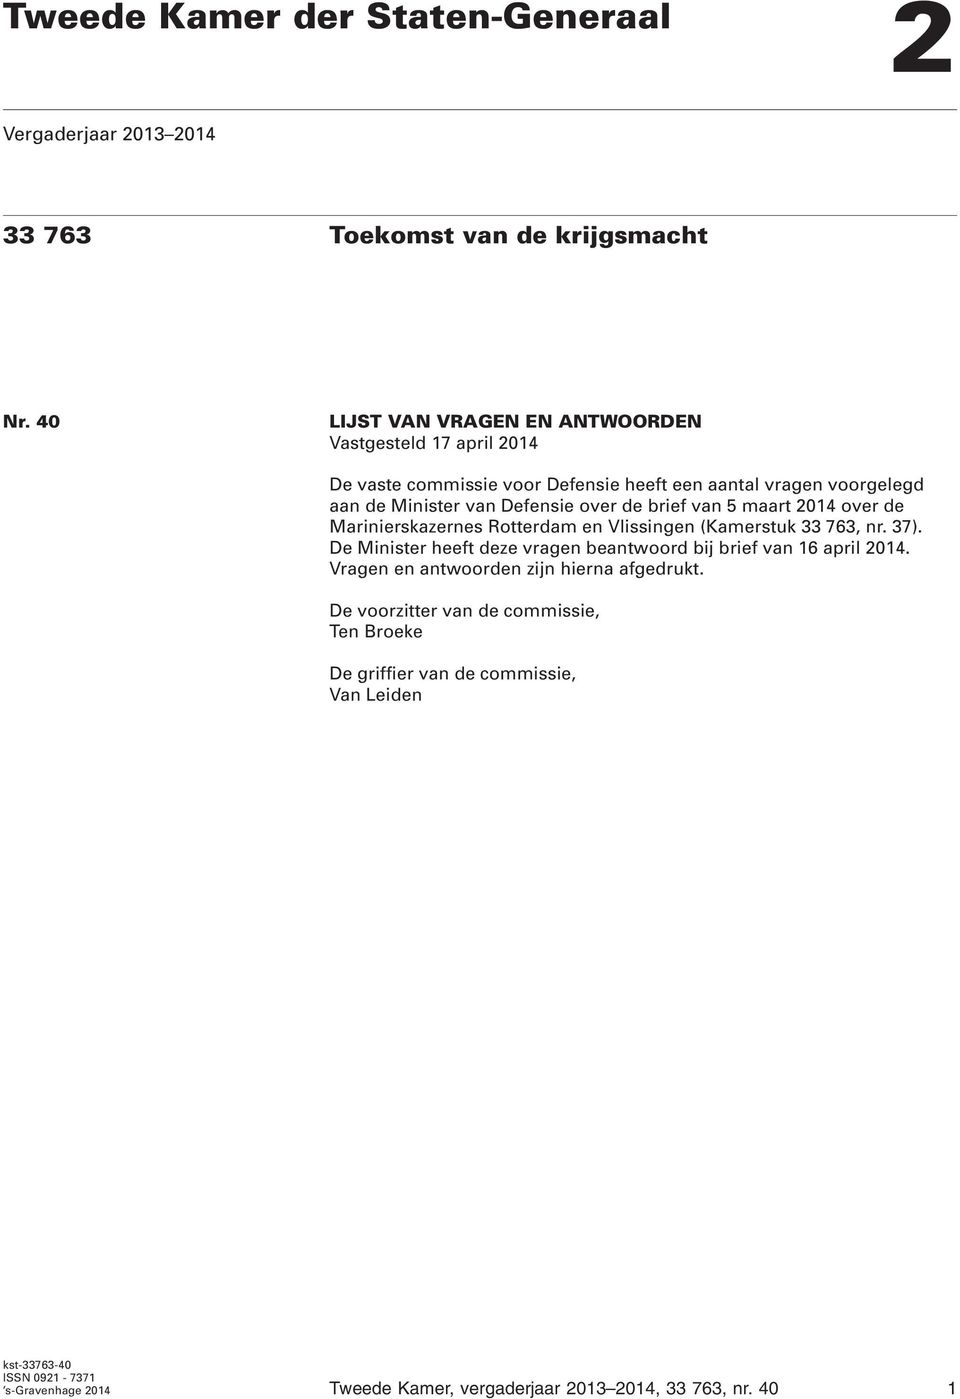 brief van 5 maart 2014 over de Marinierskazernes Rotterdam en Vlissingen (Kamerstuk 33 763, nr. 37).